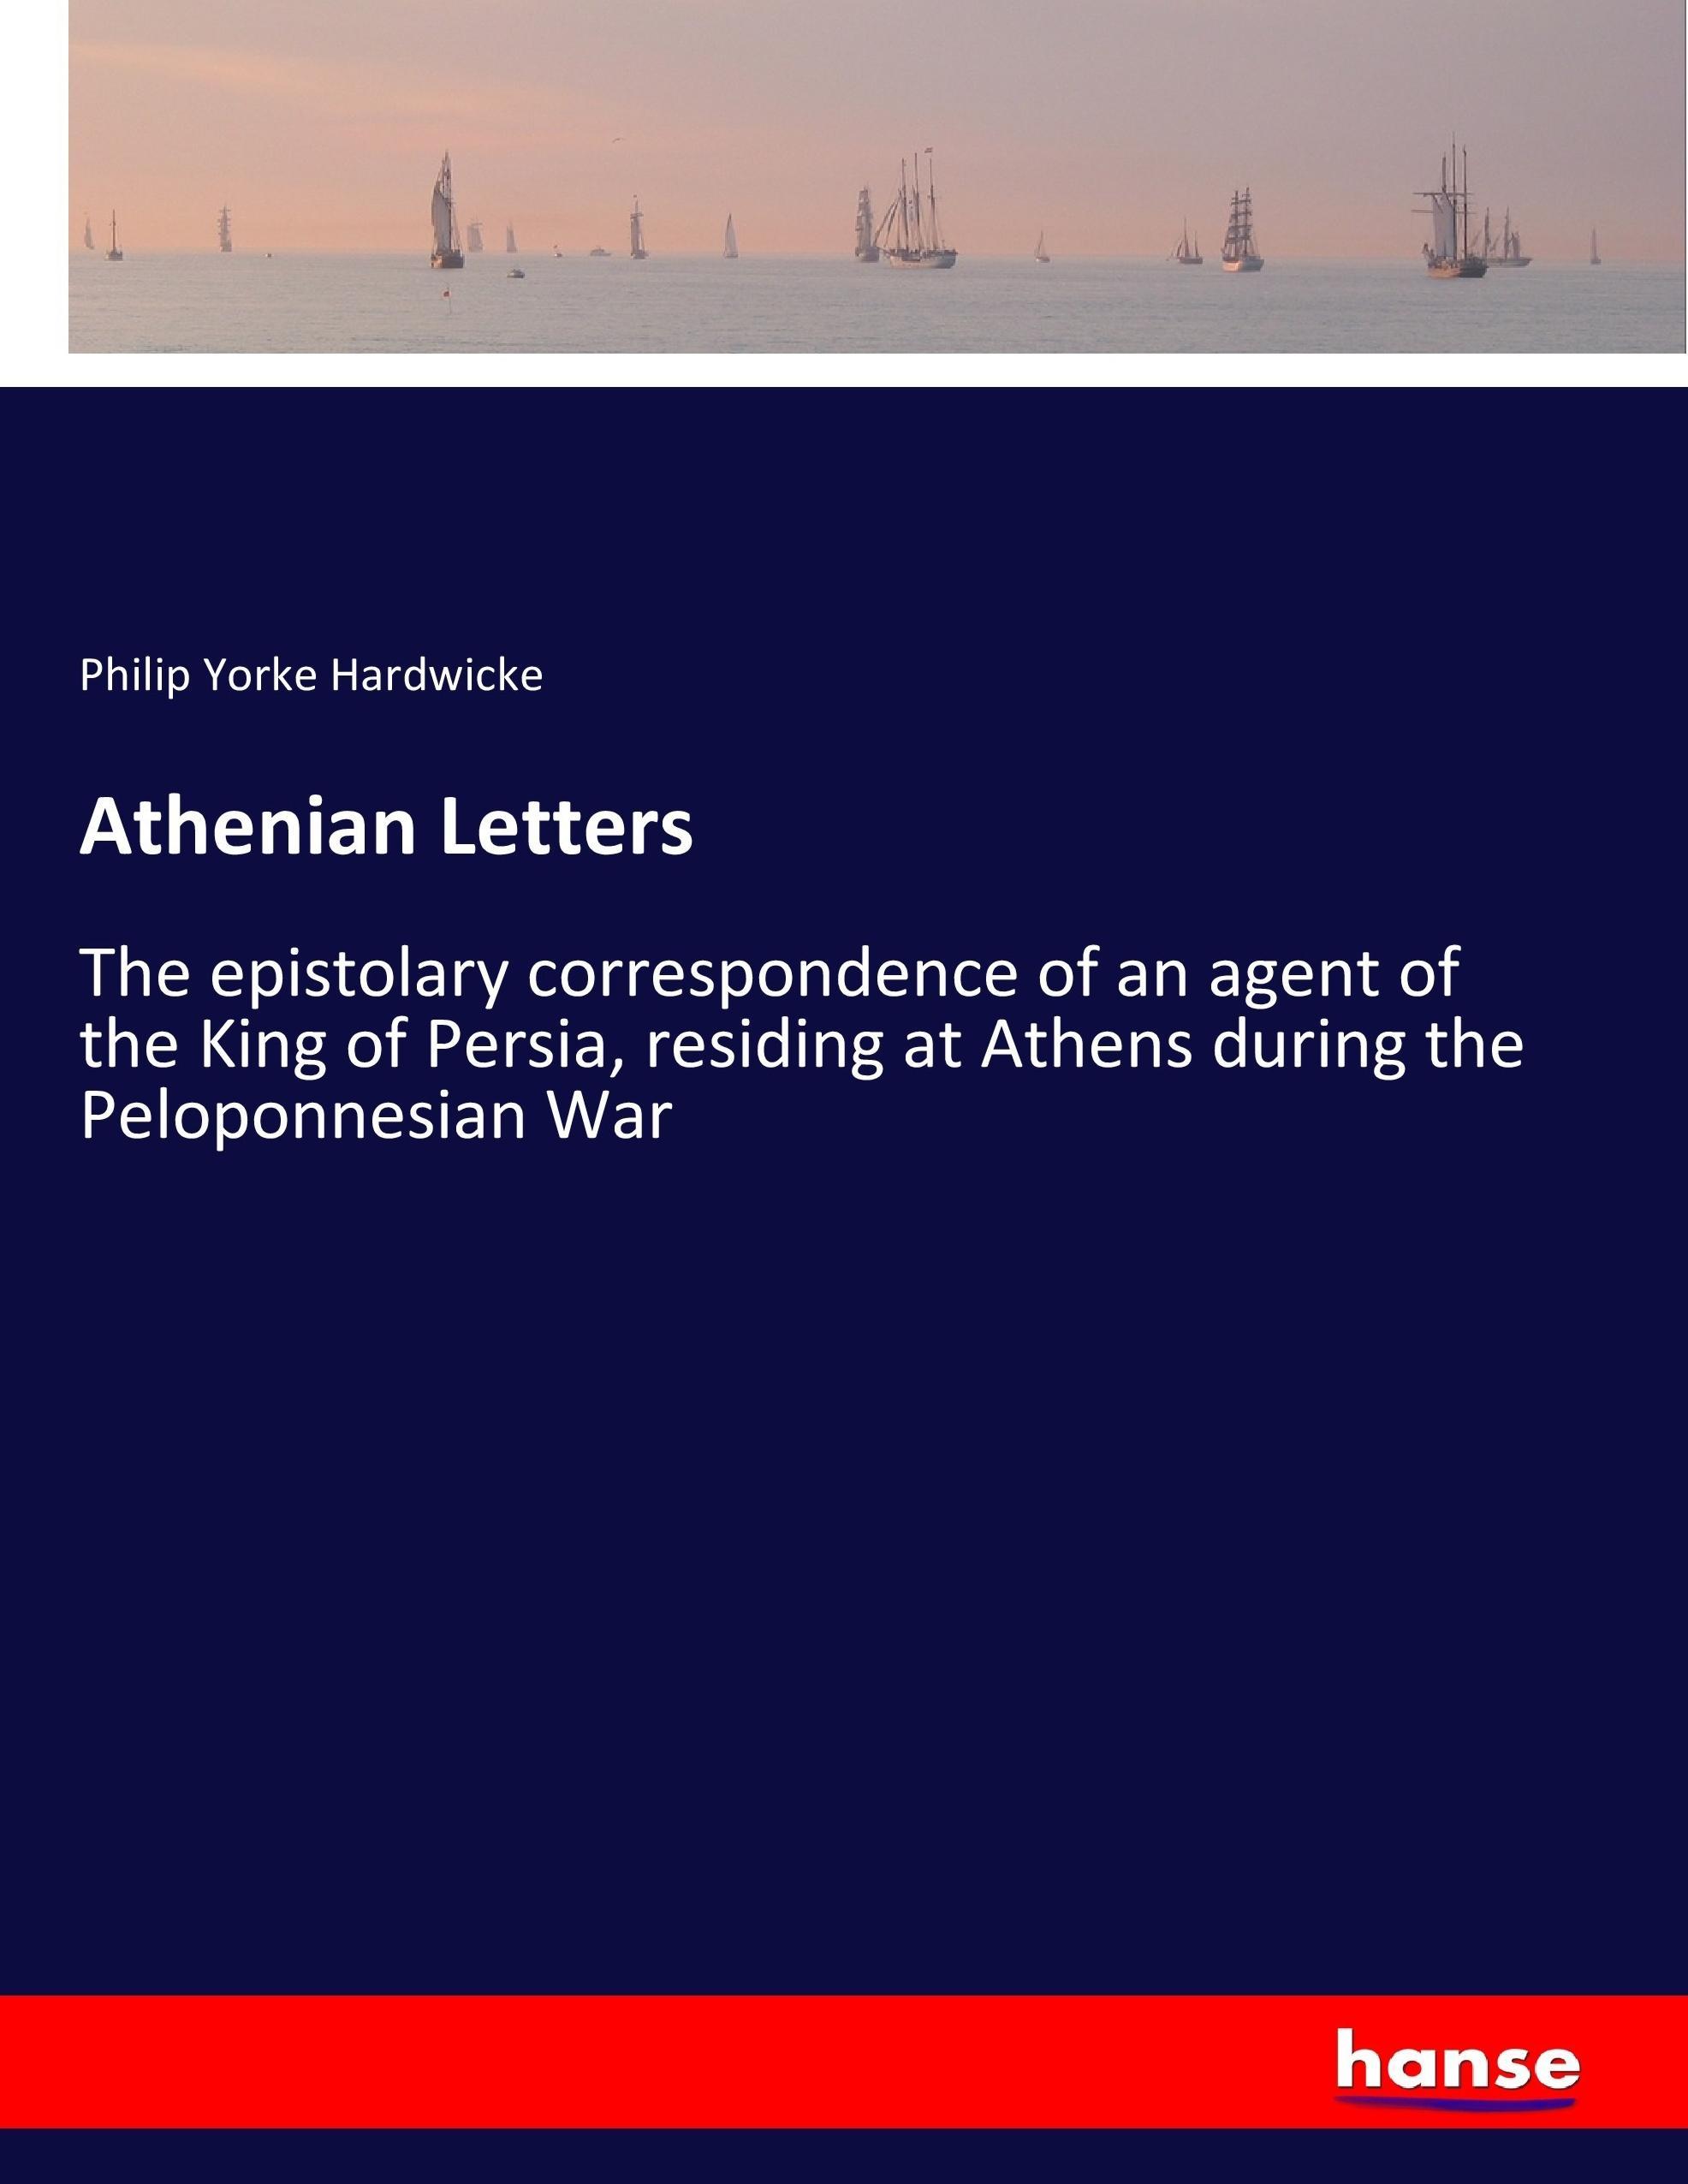 Athenian Letters - Hardwicke, Philip Yorke